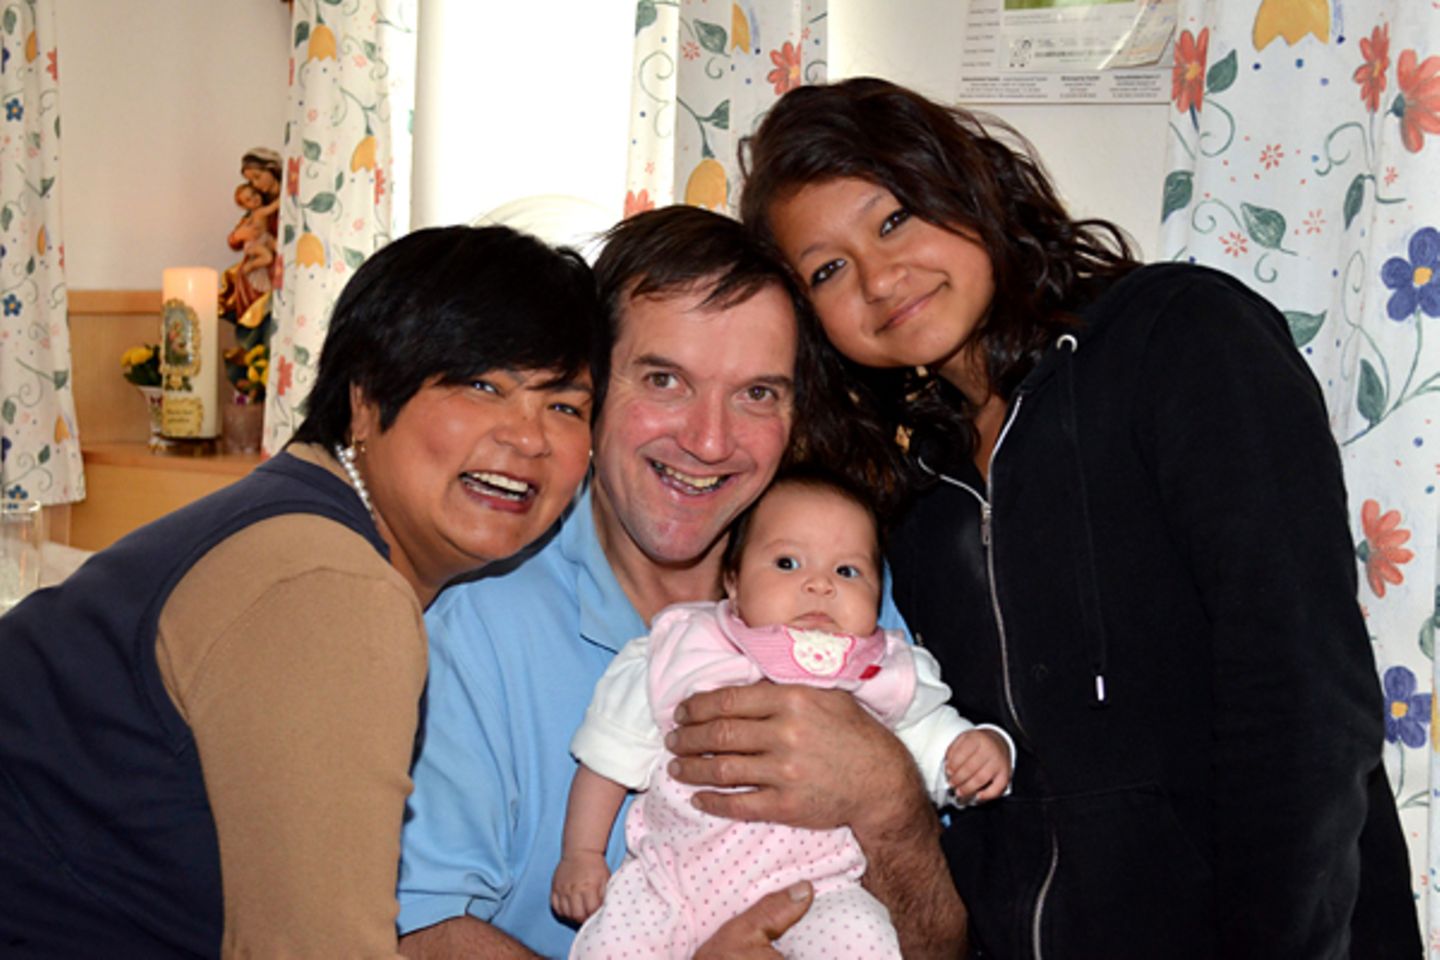 Narumol und Josef sind überglücklich über Familienzuwachs Jorafina und auch Narumols Tochter Jenny ist ganz stolz auf ihre klein